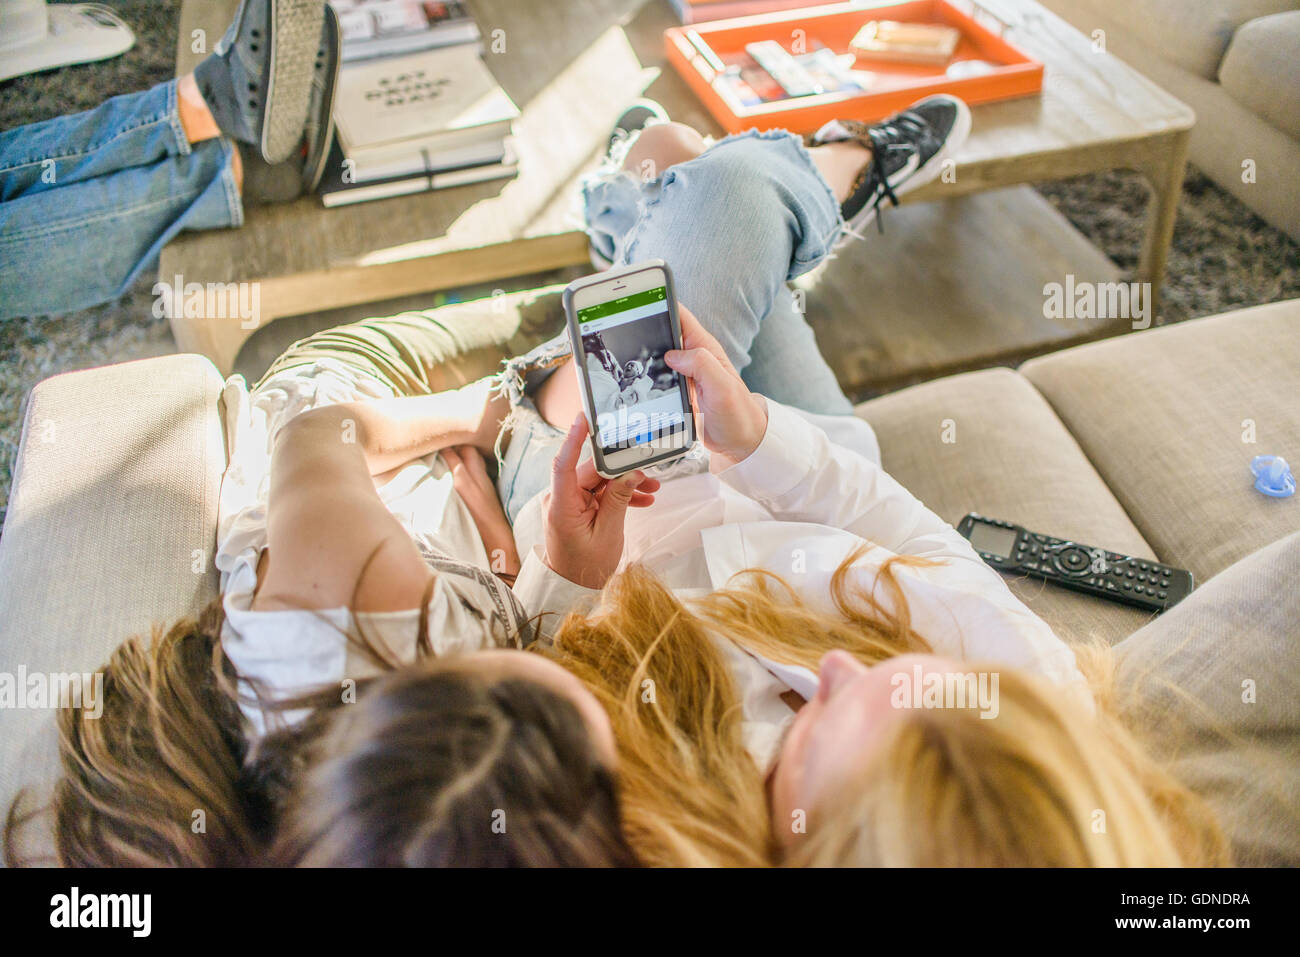 Draufsicht von Mutter und Tochter im Teenageralter auf Sofa suchen neugeborenes Baby Foto auf smartphone Stockfoto